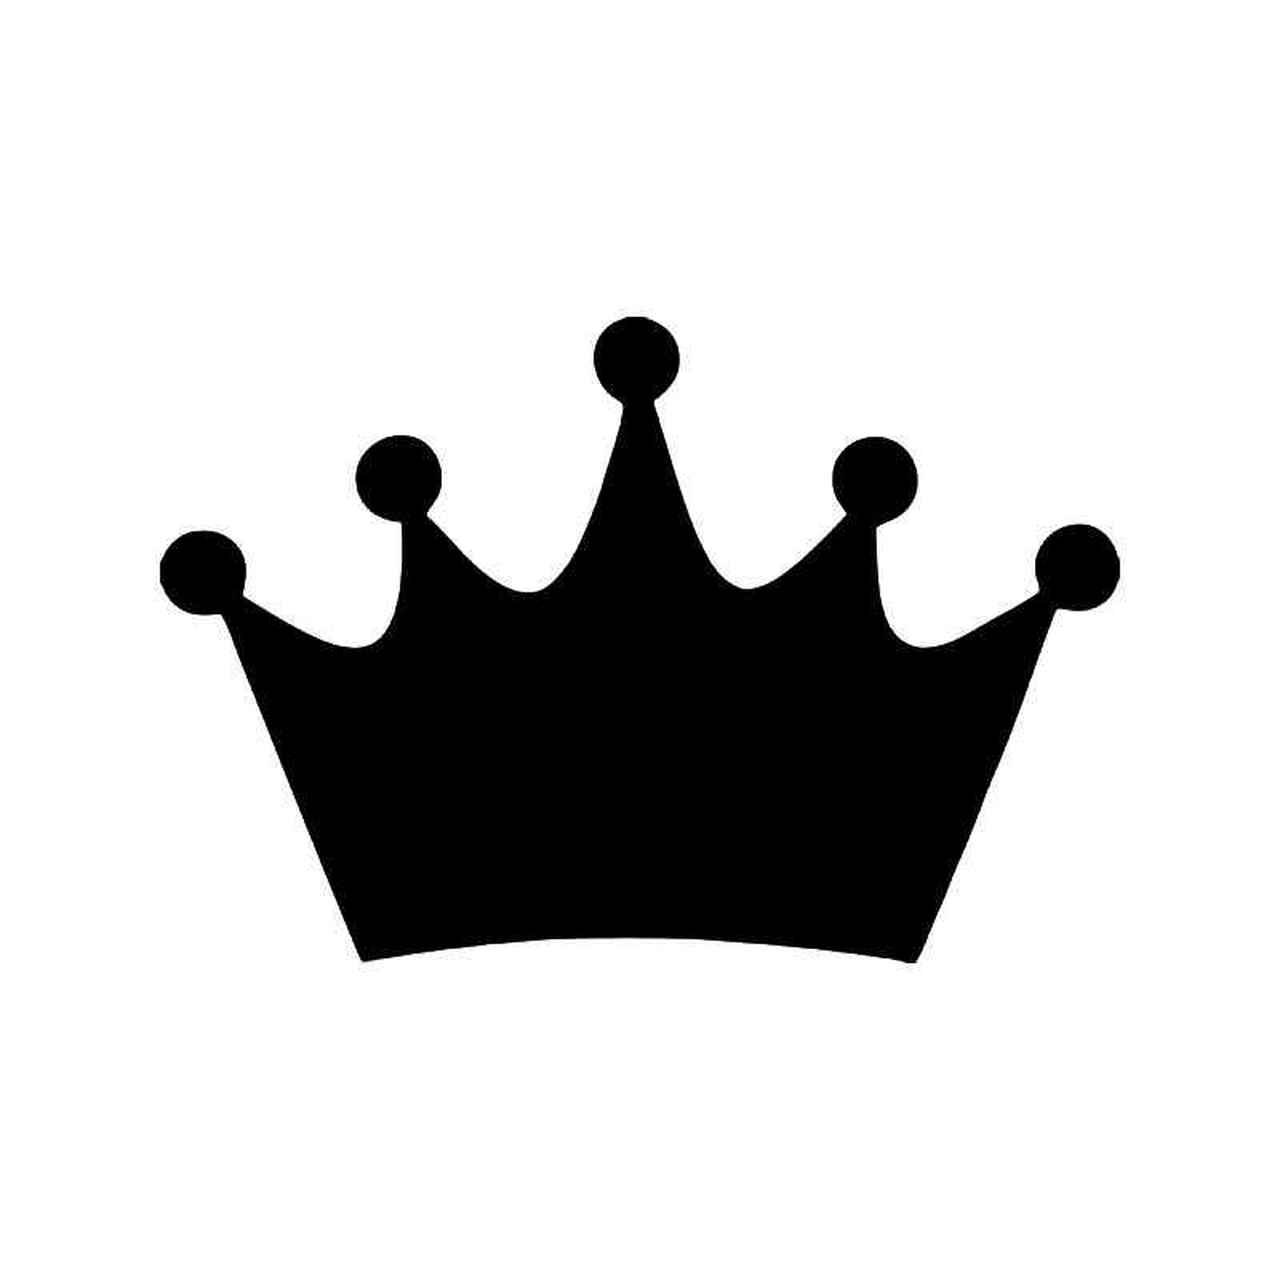 символы короны для пубг фото 7